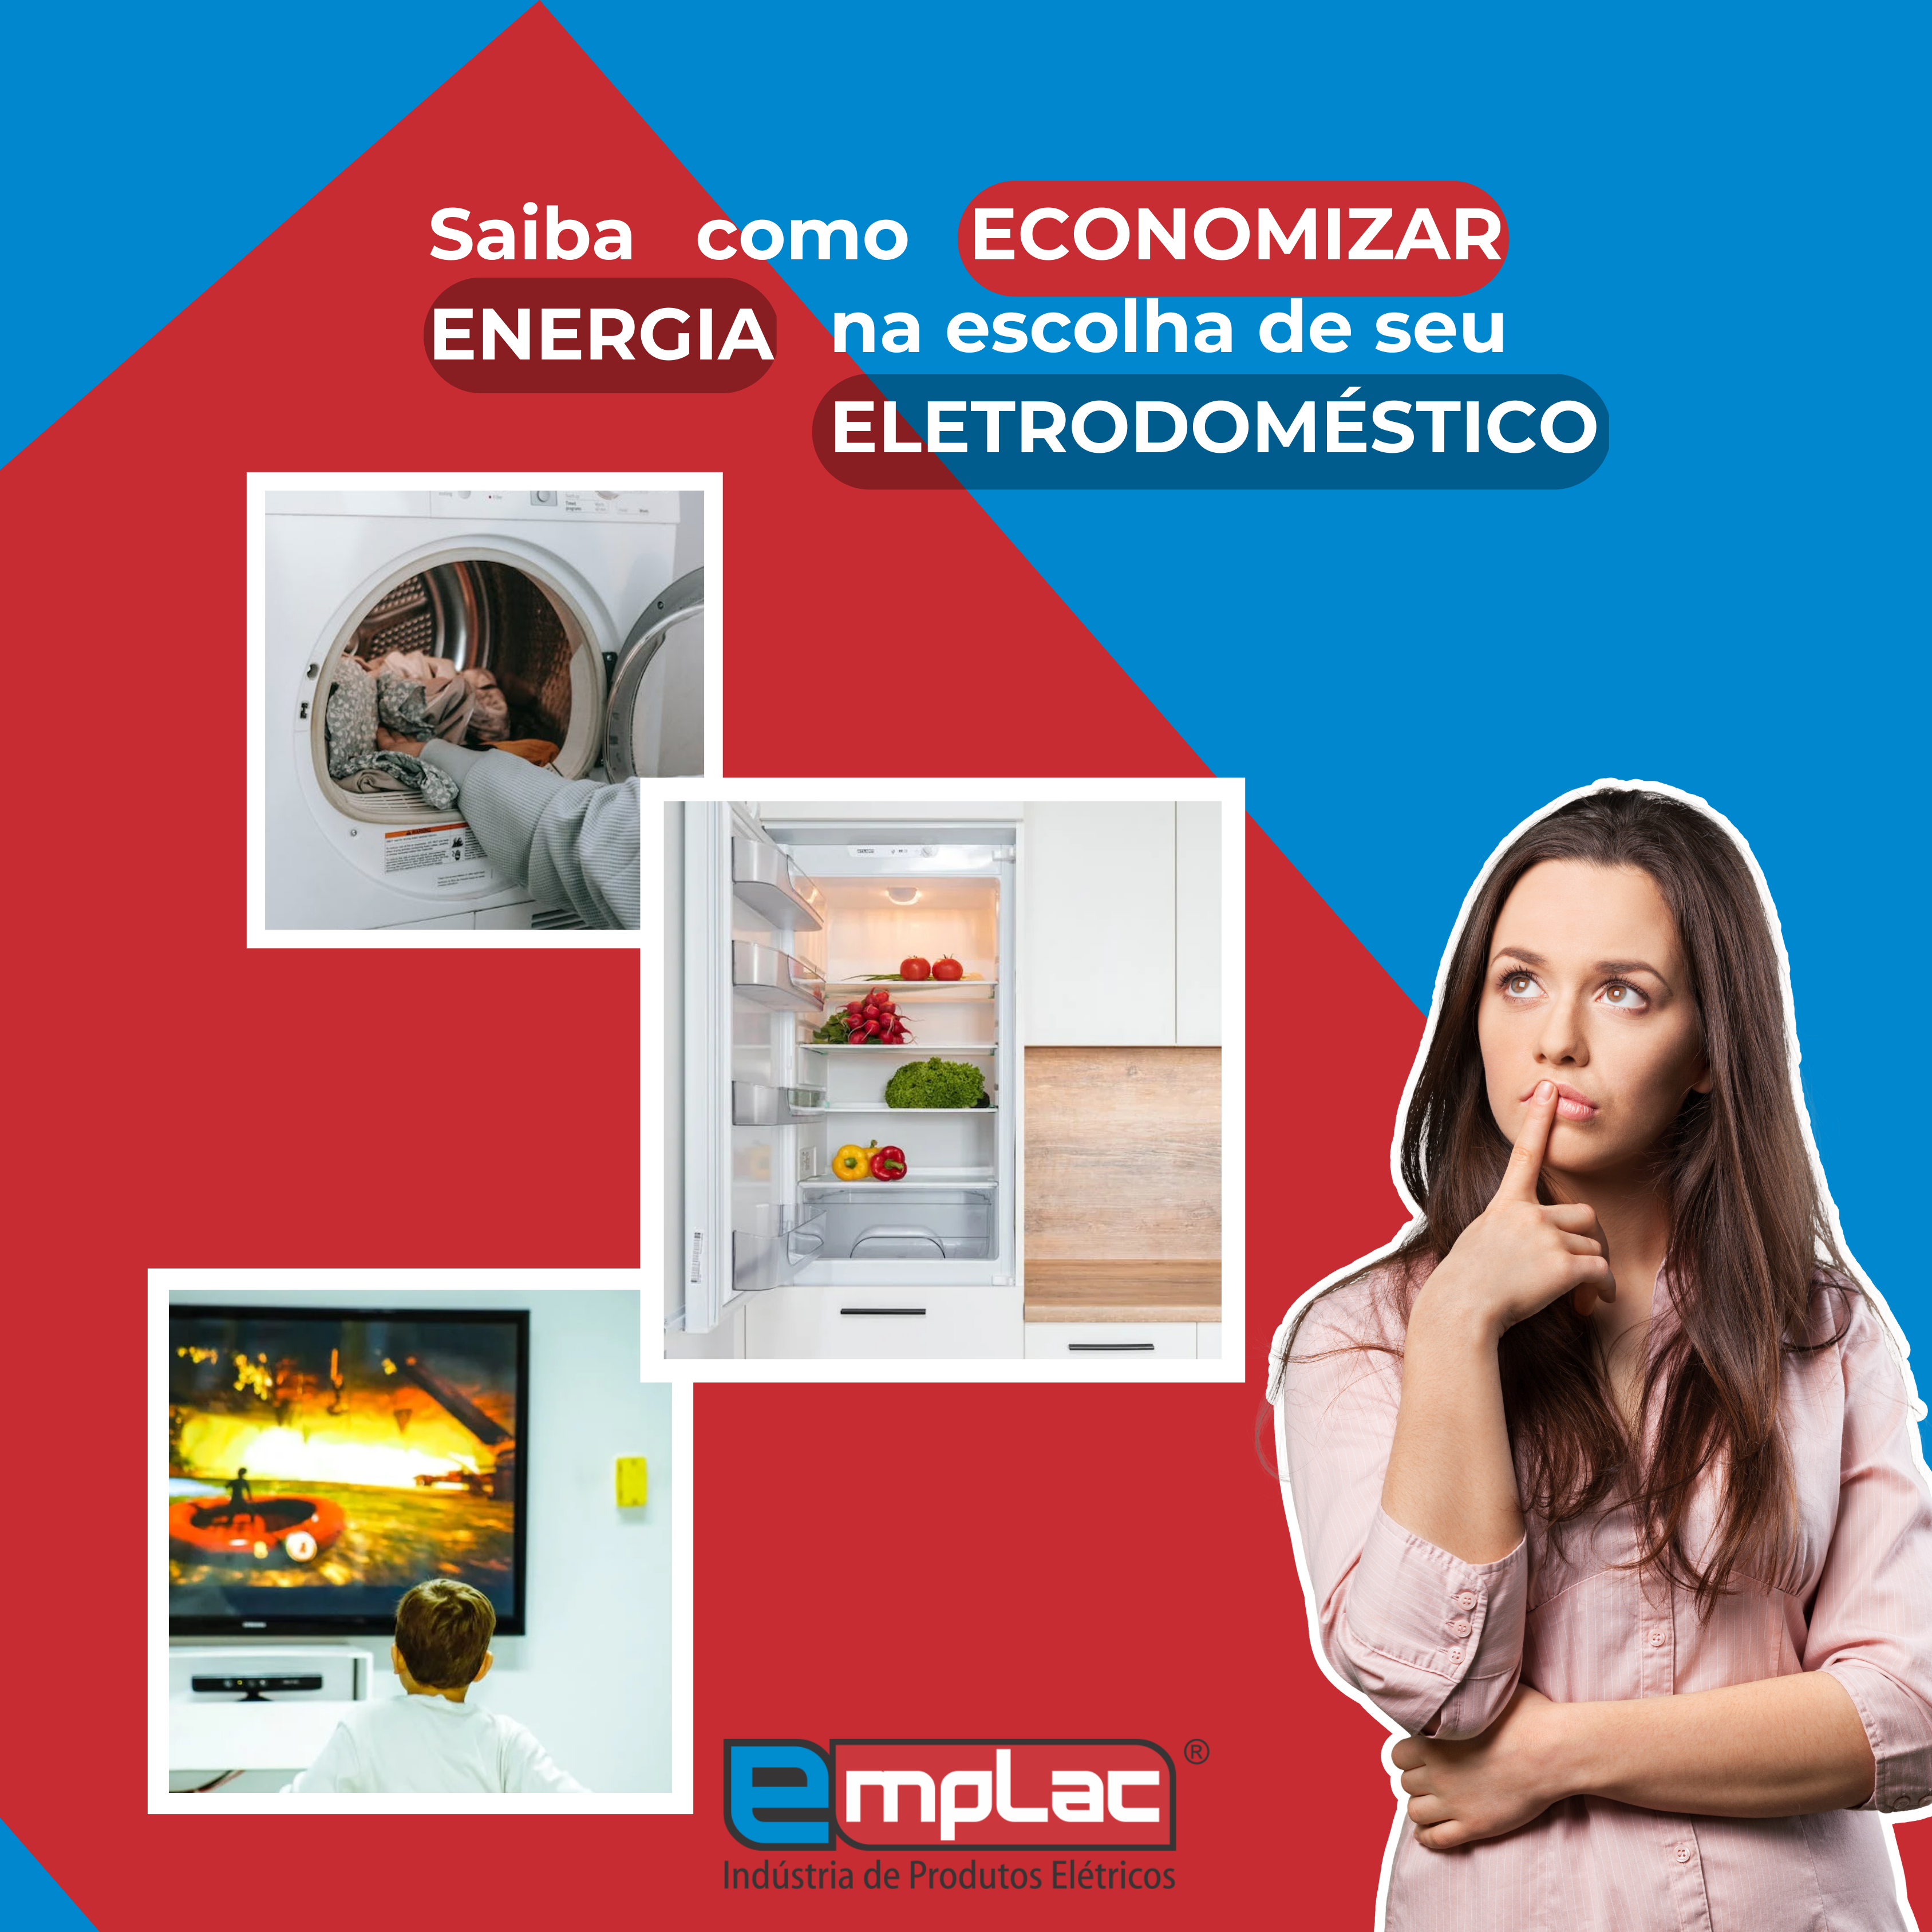 Economia de Energia: saiba escolher seu eletrodoméstico